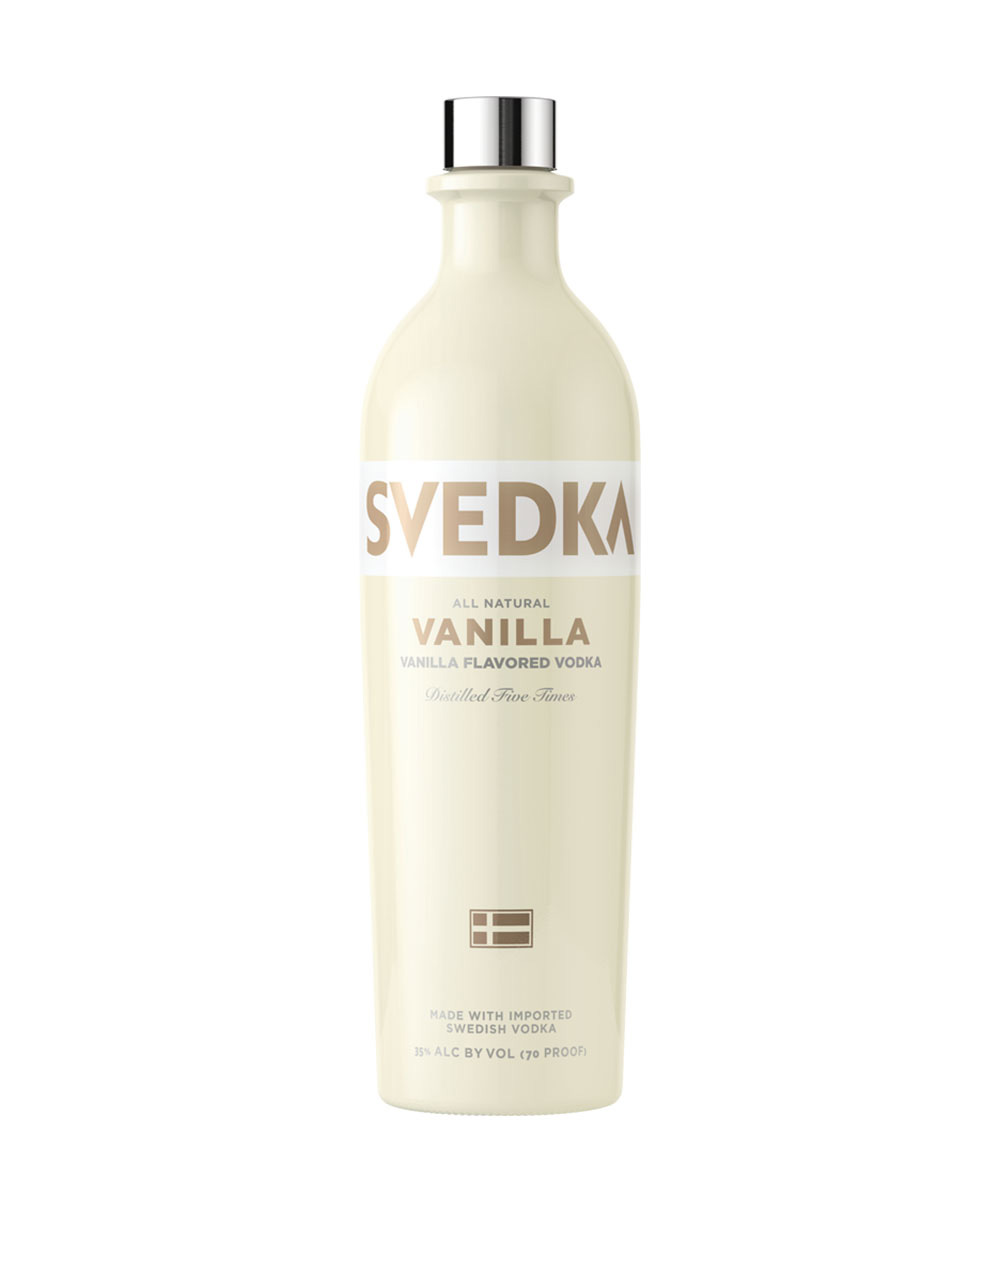 Svedka Vanilla Vodka